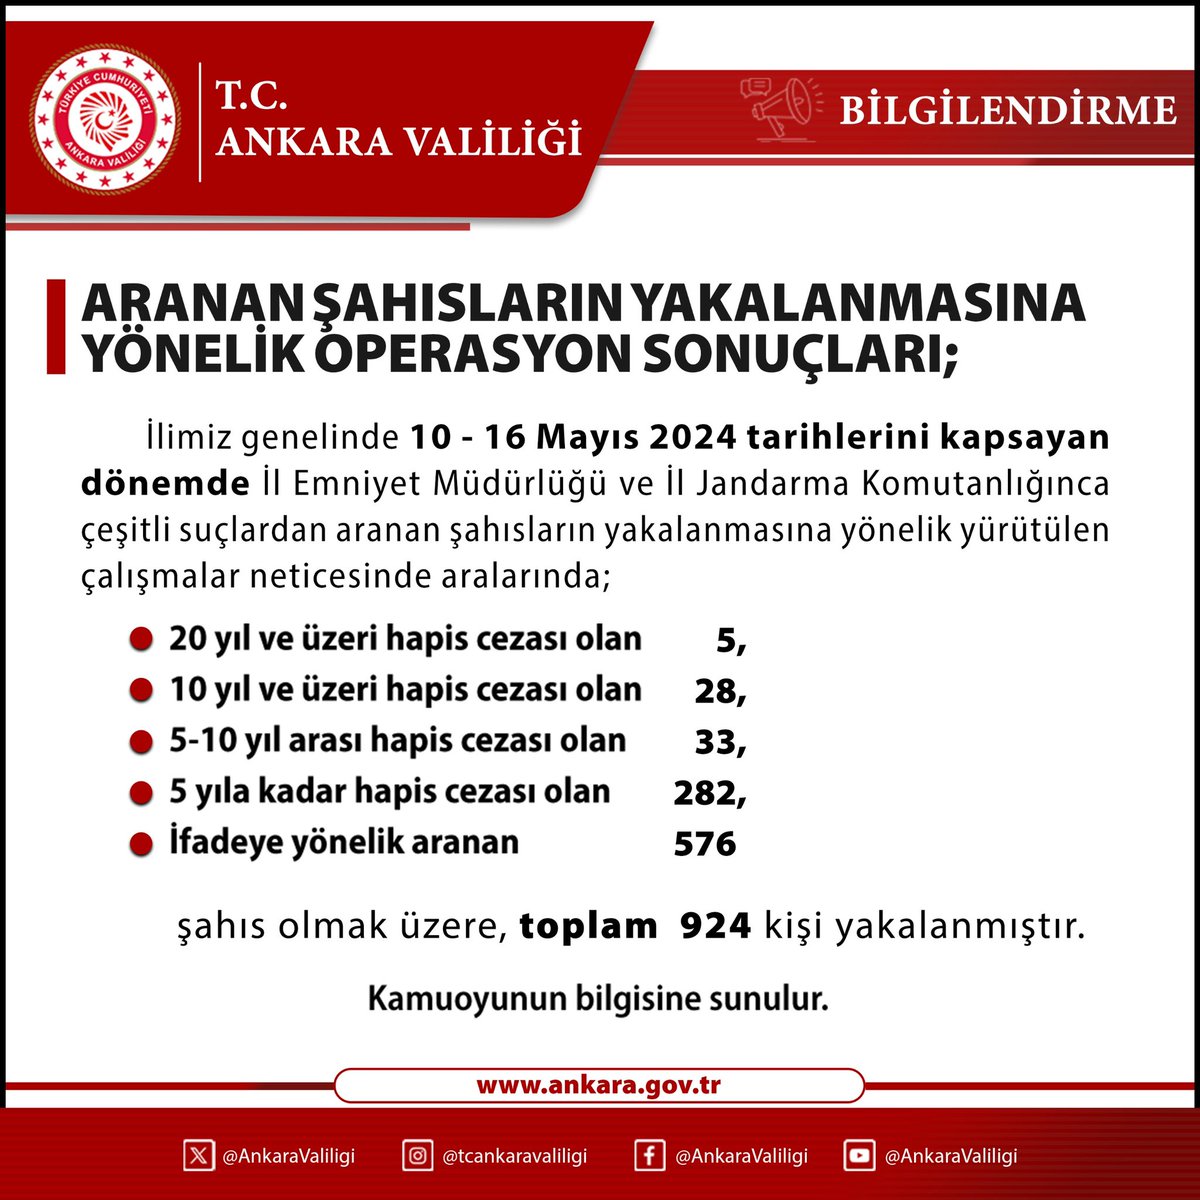 Ankara il genelinde 10-16 Mayıs 2024 tarihlerini kapsayan dönemde aranan şahısların yakalanmasına yönelik operasyon sonuçlarına ilişkin bilgiler…